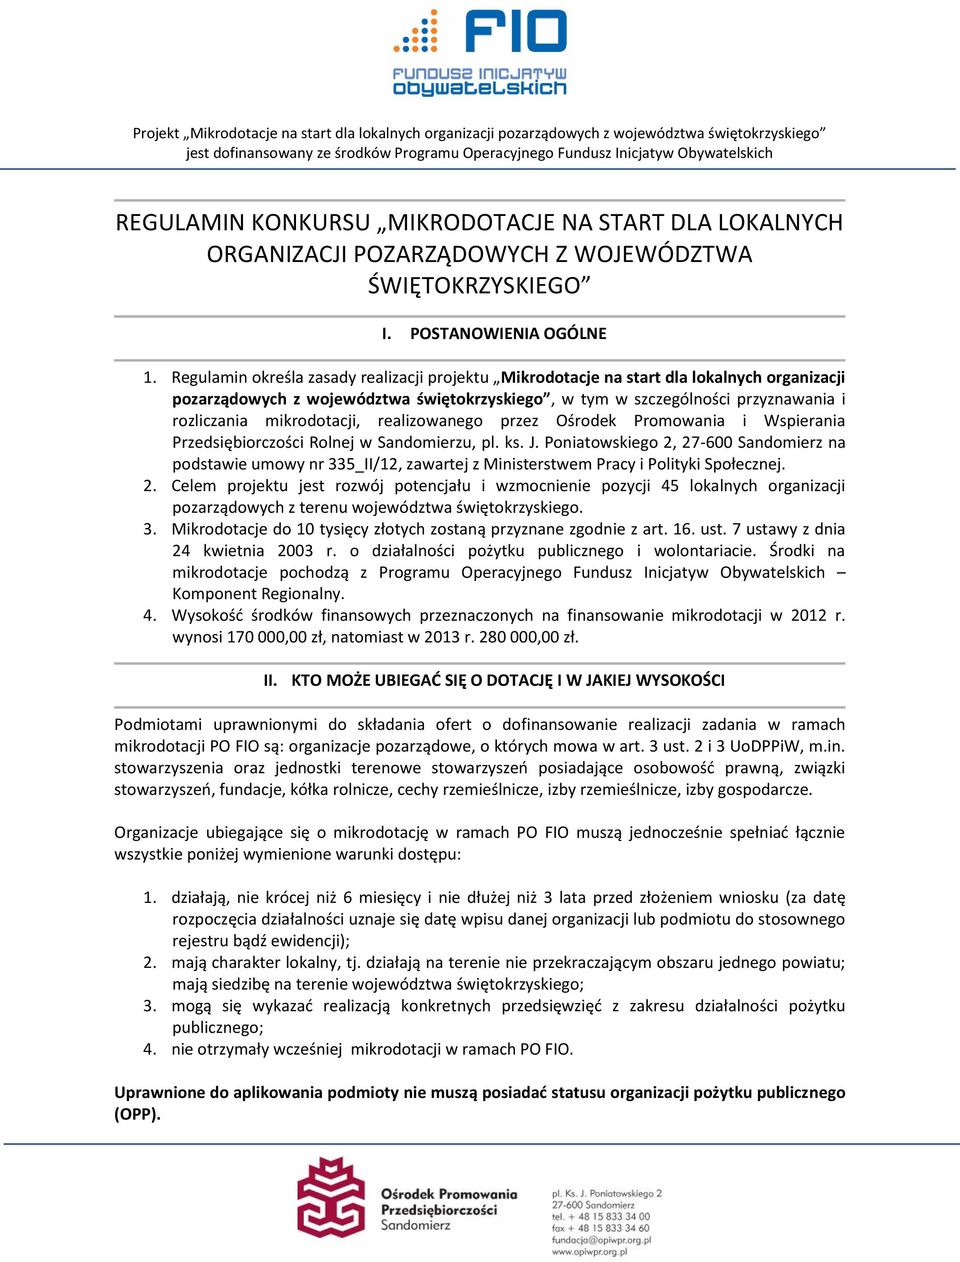 mikrodotacji, realizowanego przez Ośrodek Promowania i Wspierania Przedsiębiorczości Rolnej w Sandomierzu, pl. ks. J.